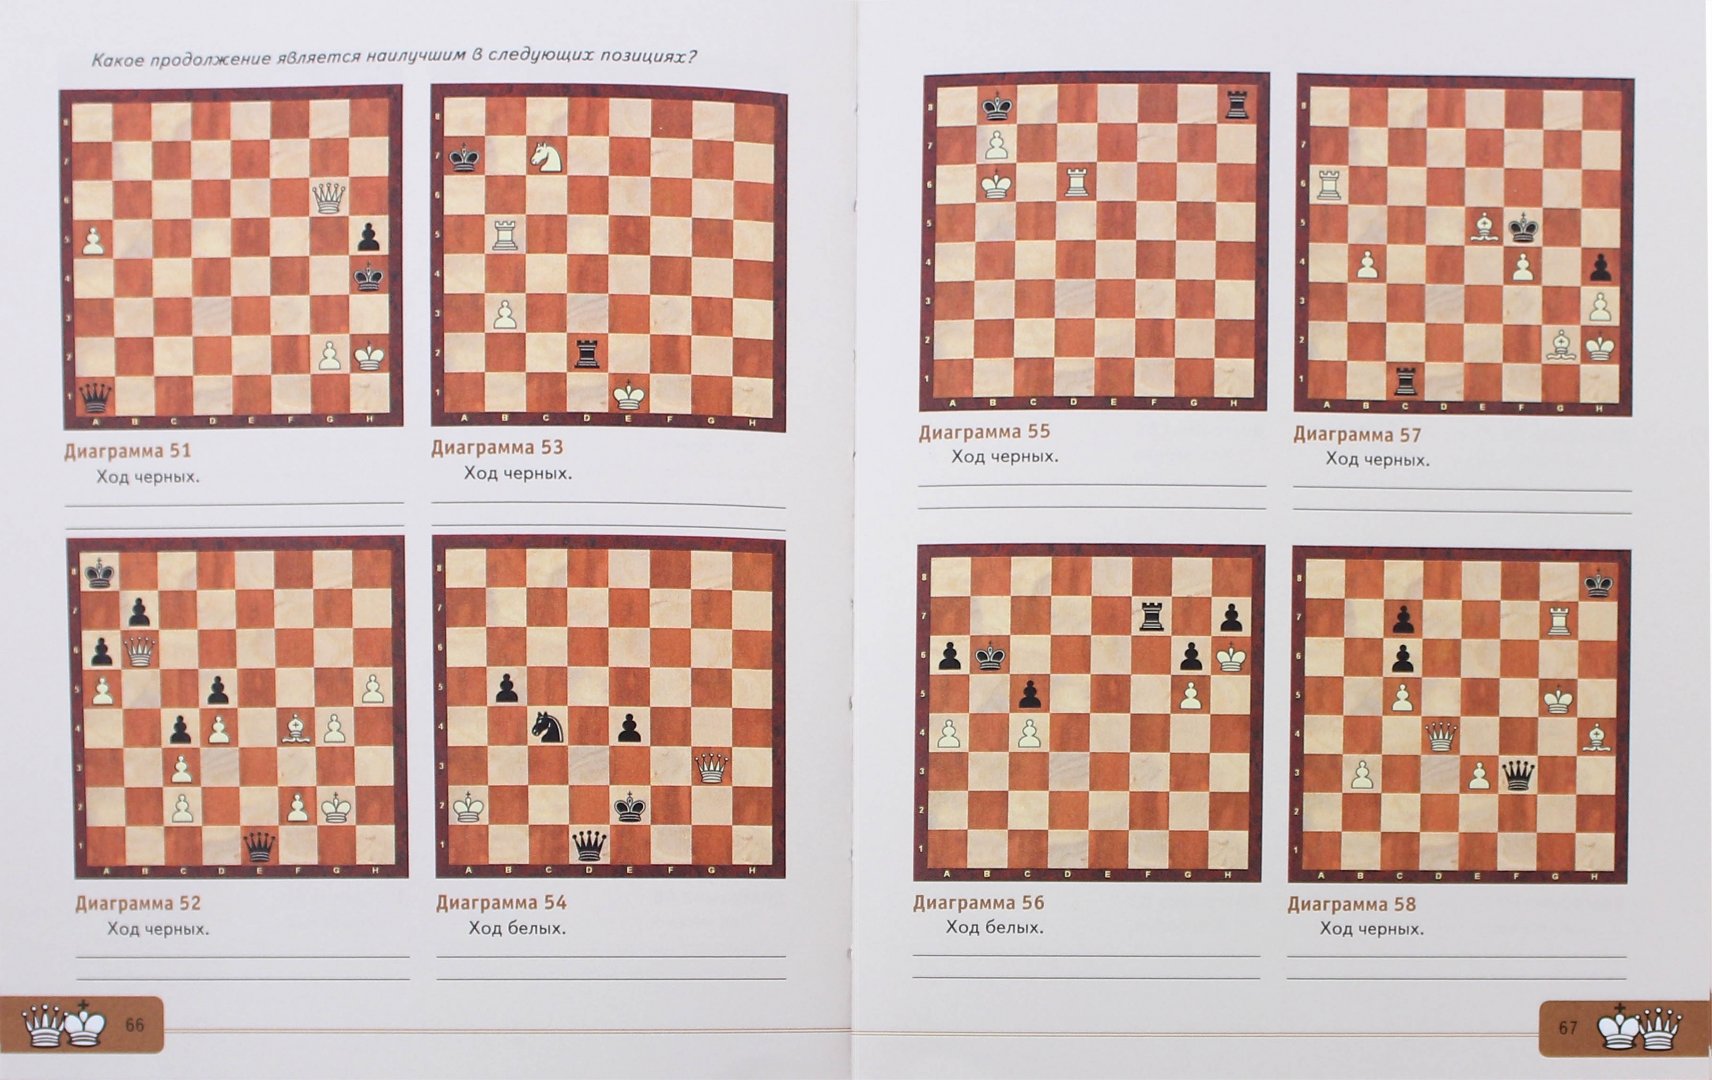 Иллюстрация 1 из 14 для Шахматы для начинающих. Правила, стратегии и тактика игры - Инна Романова | Лабиринт - книги. Источник: Лабиринт